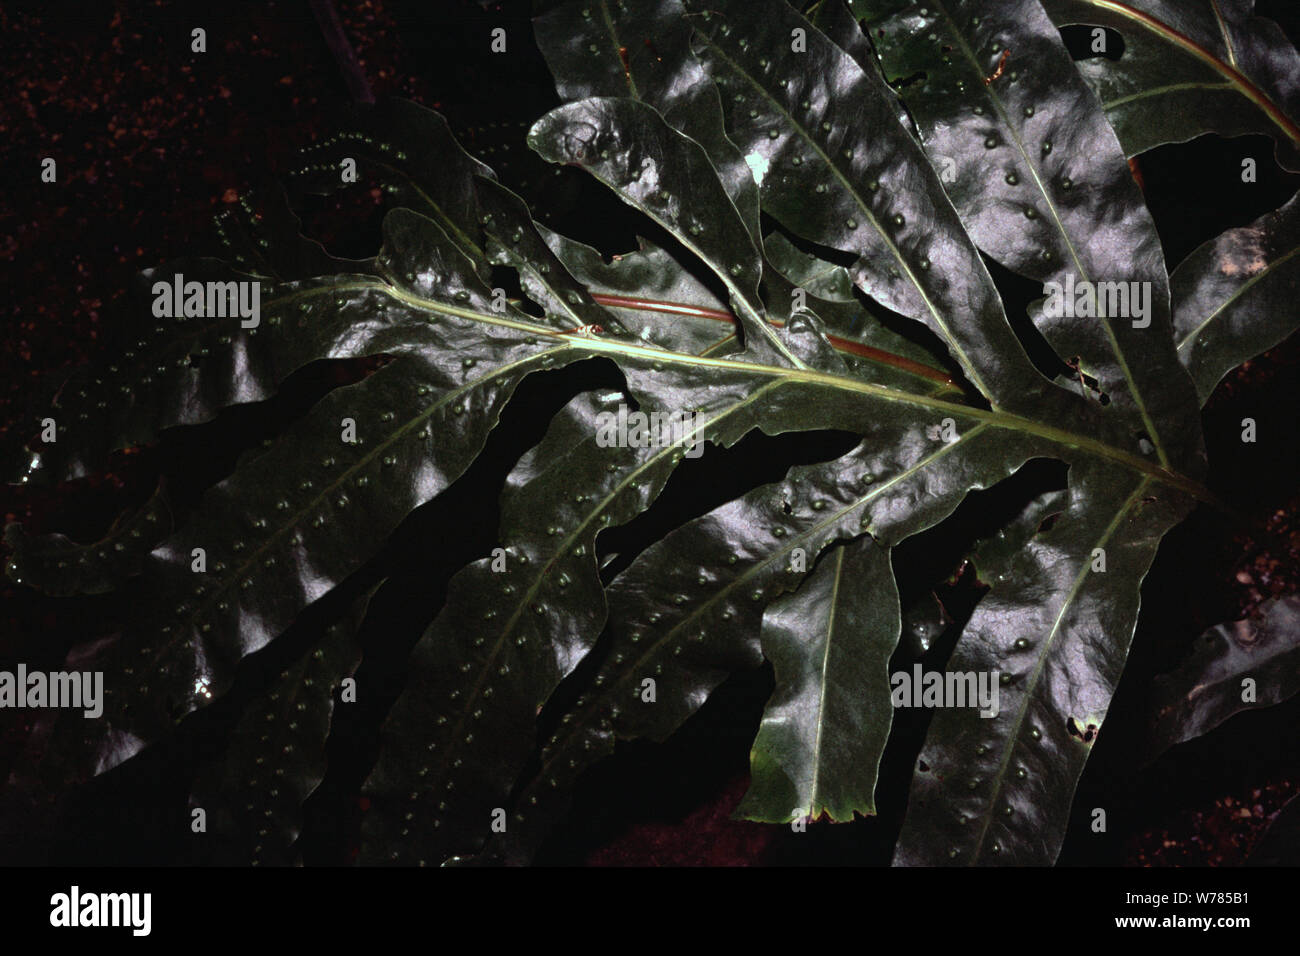 Pimple fern, Microsorum membranifolium Stock Photo